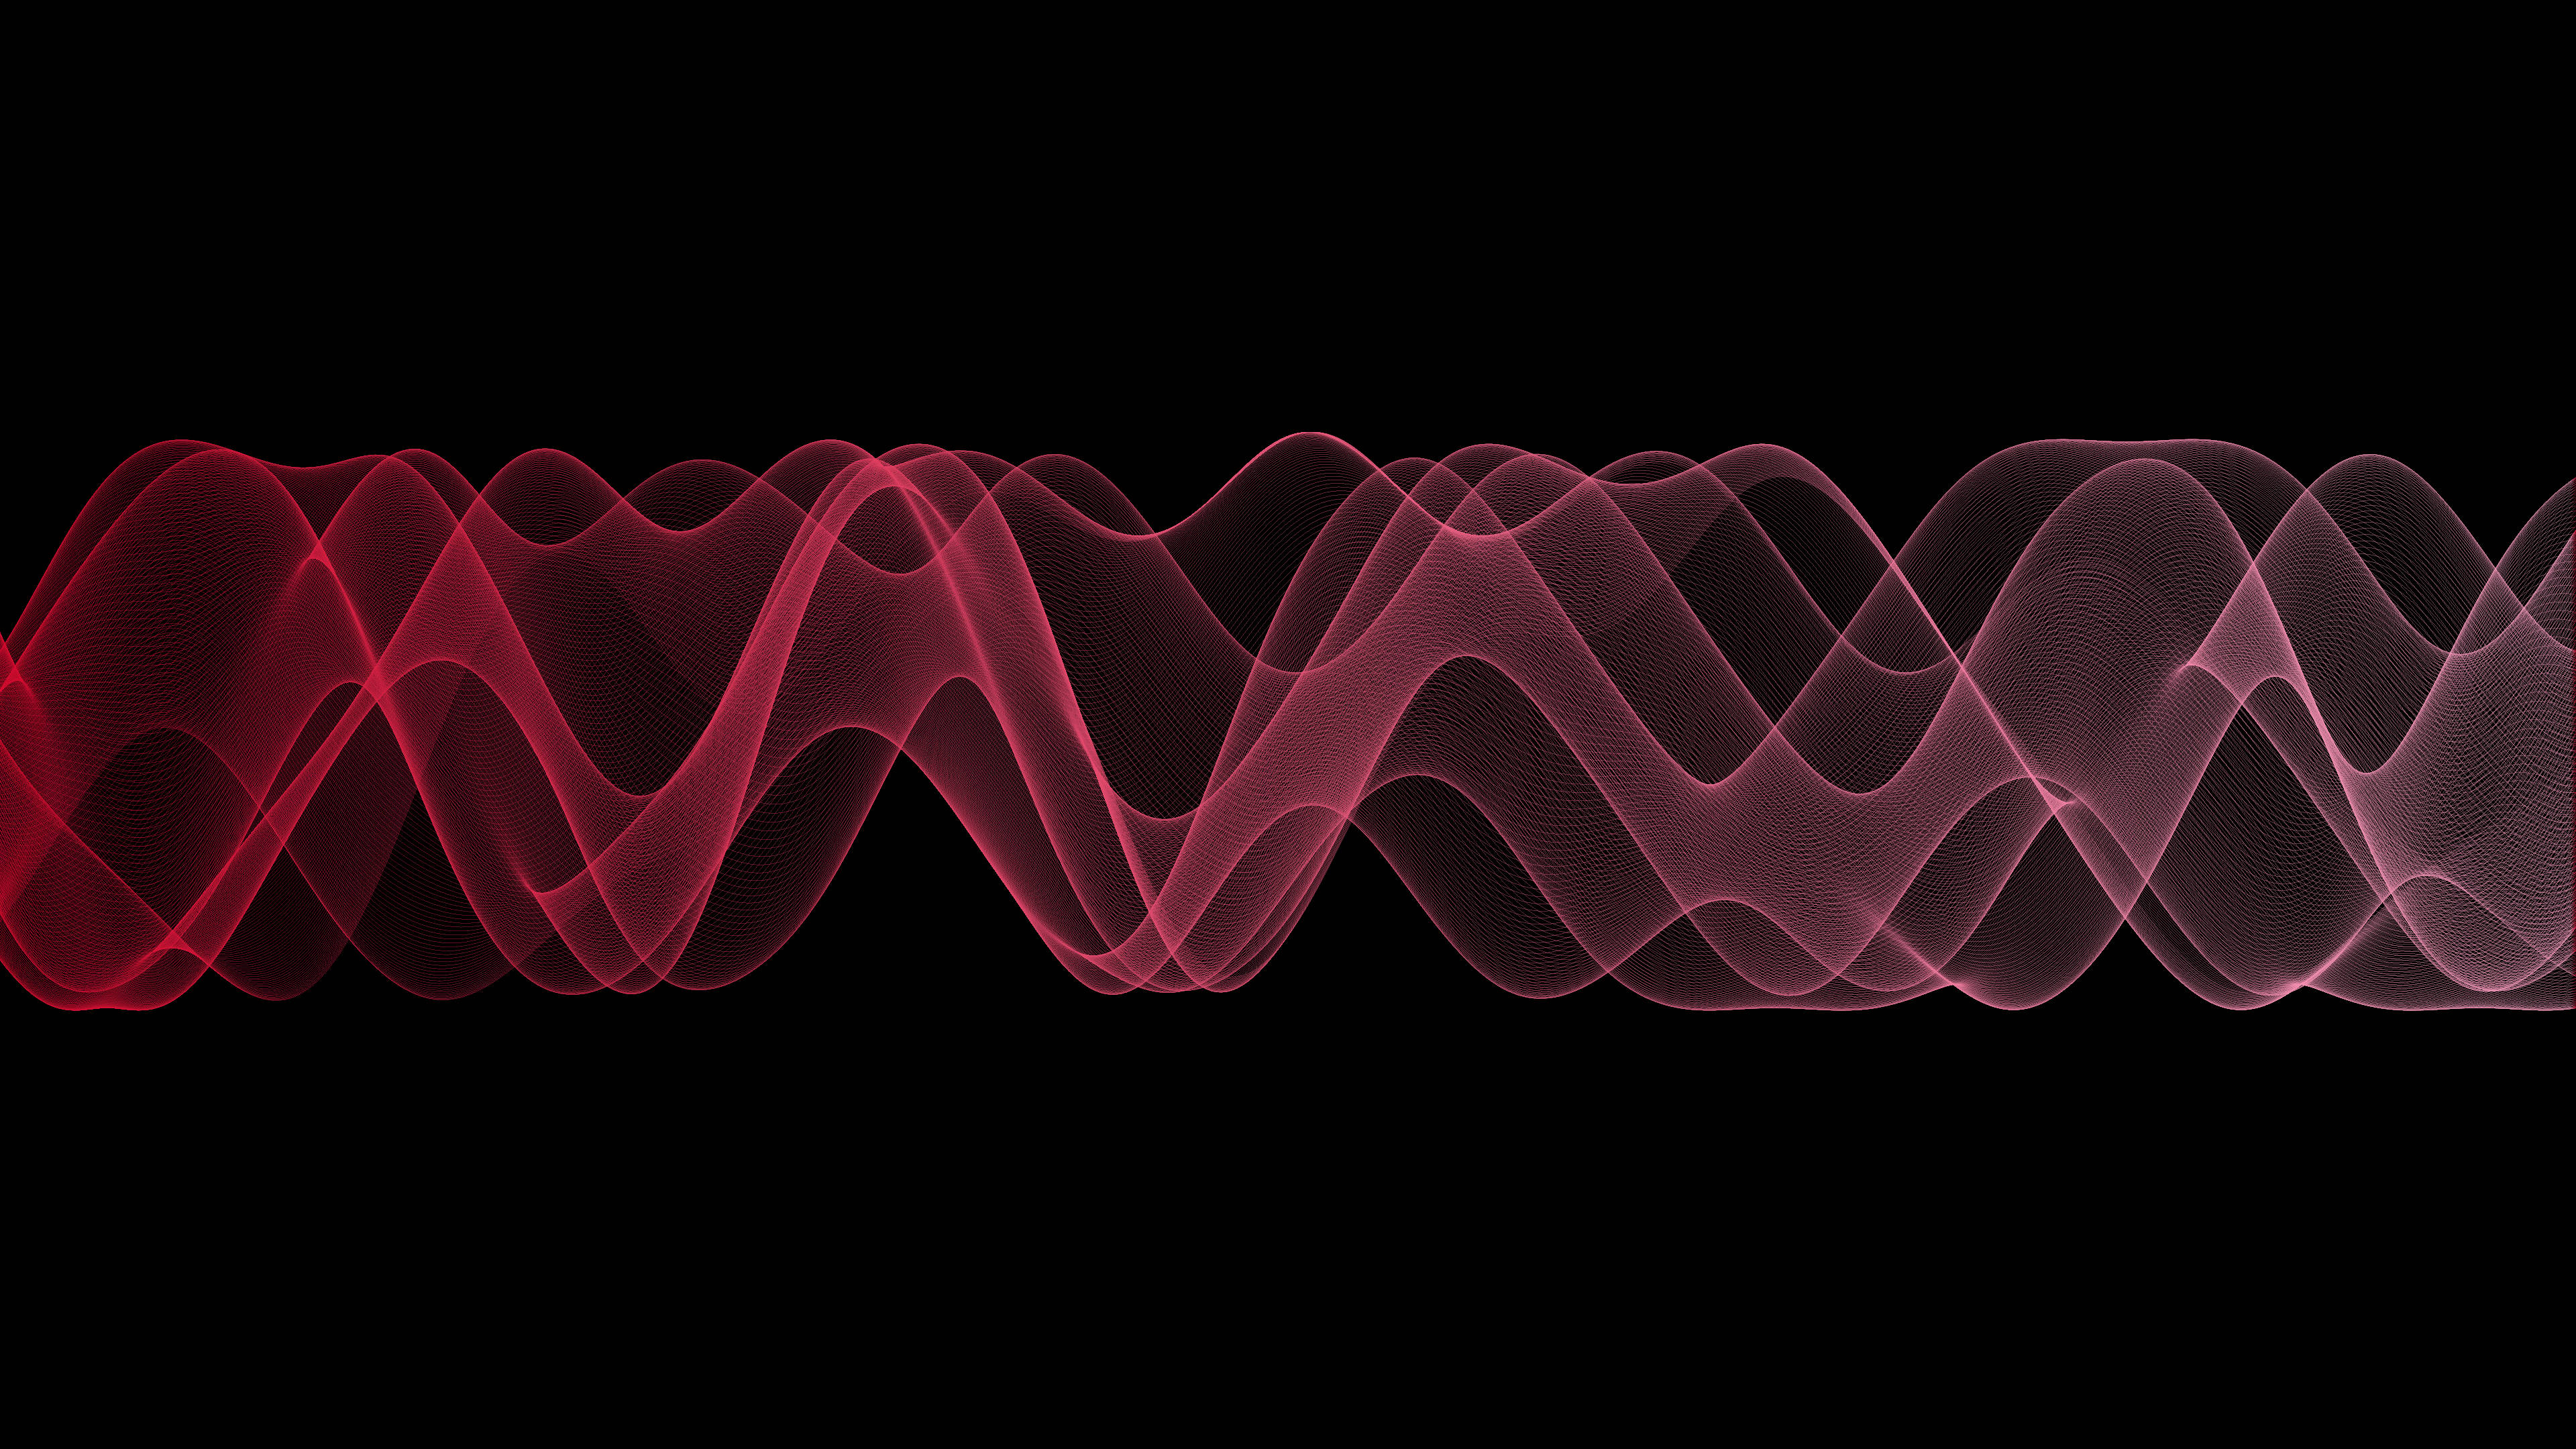 High Resolution Sound Waves Background